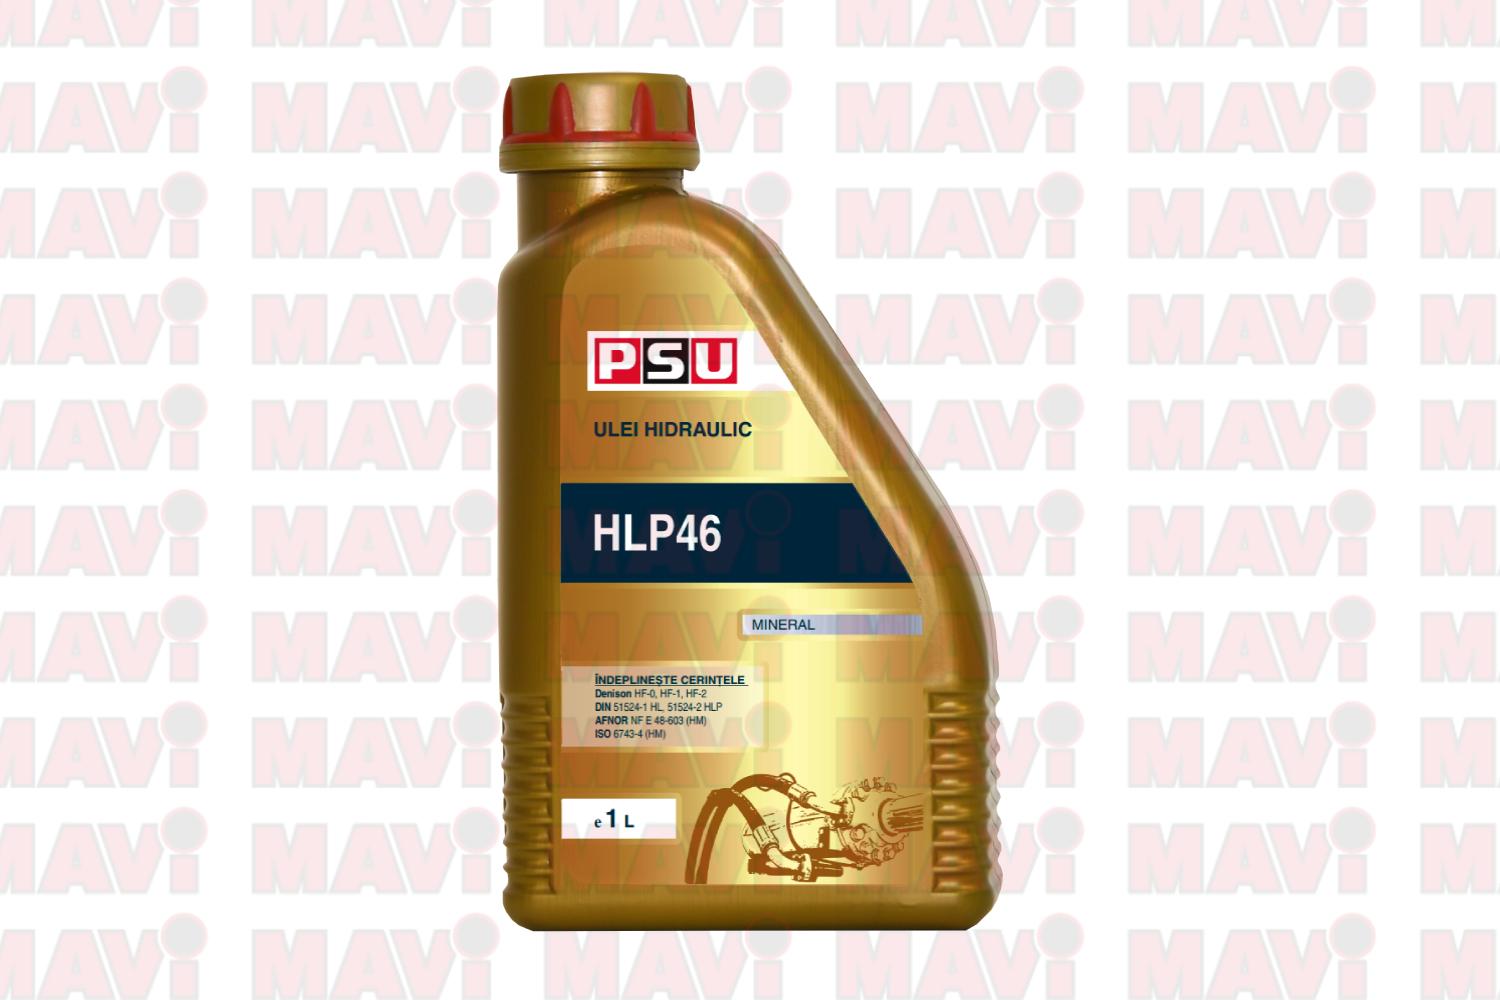 PSU ulei utilaje multimarca-Ulei hidraulic HLP46 PSU 1L- MAVI